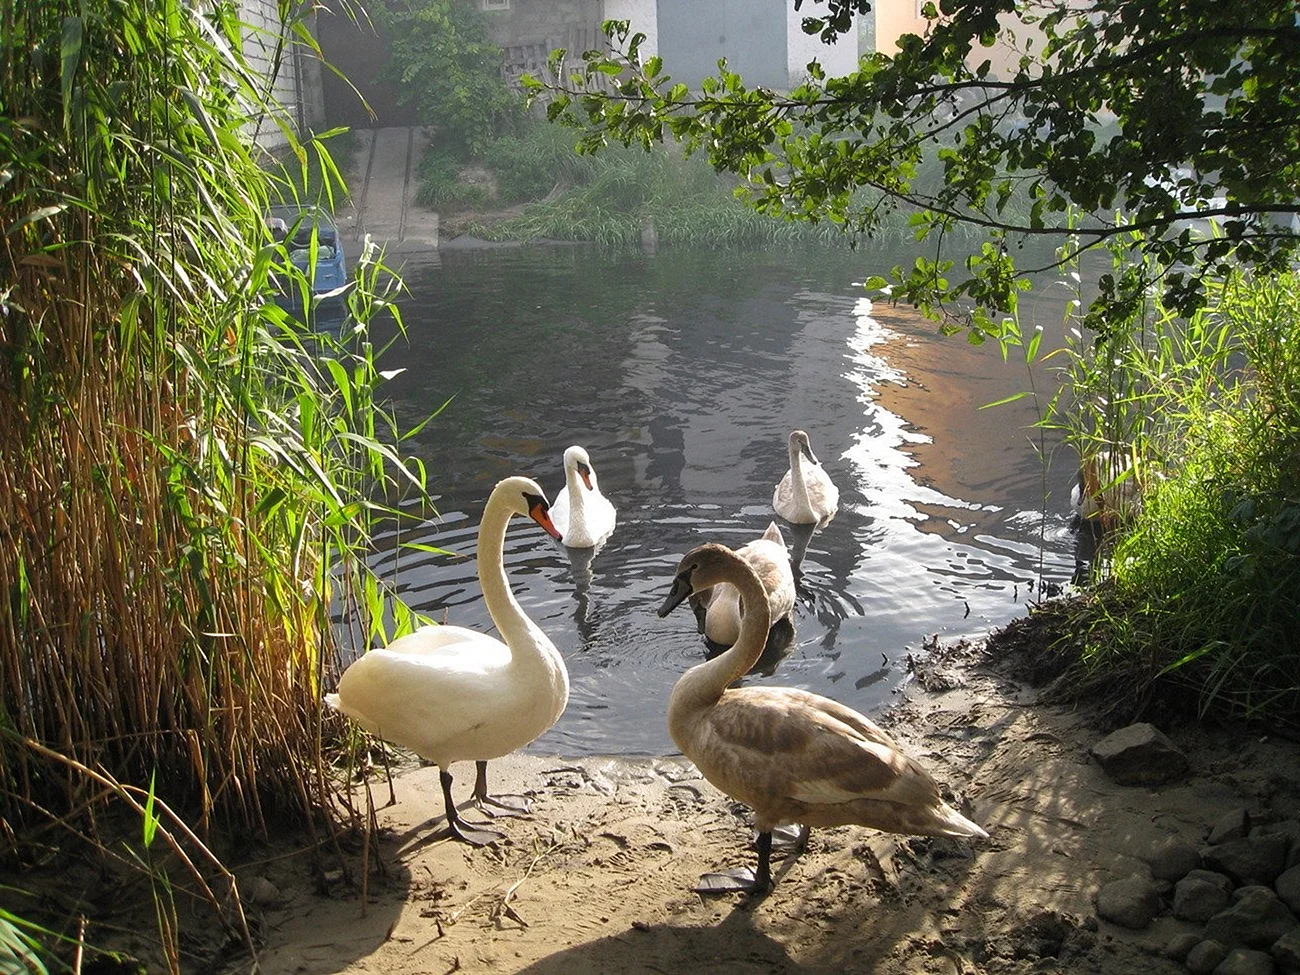 «Лебеди в пруду» Василе Паскару